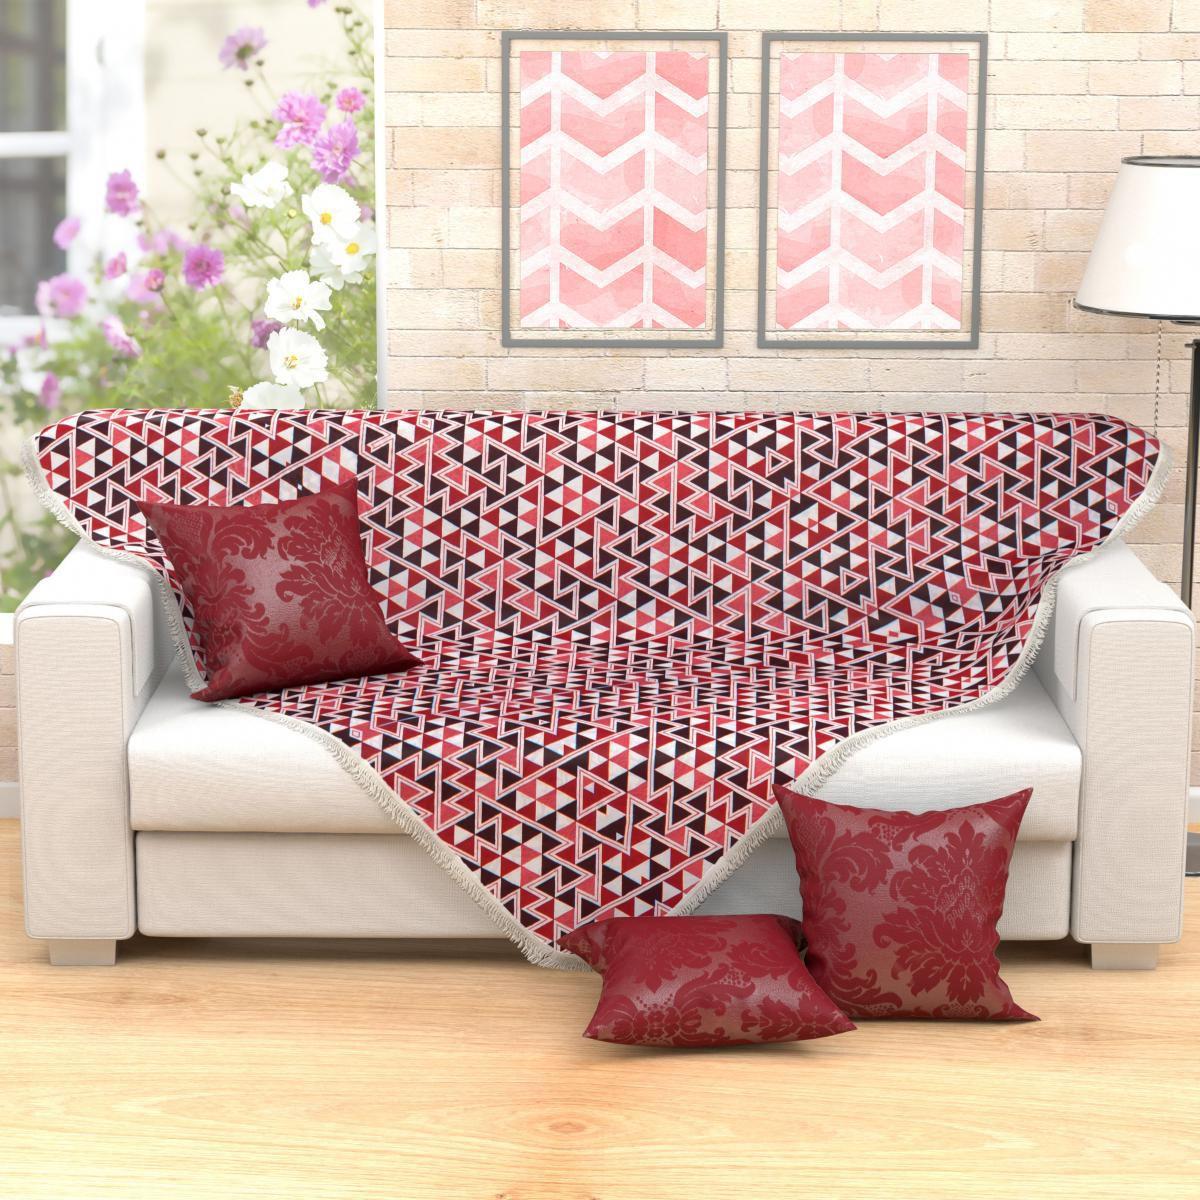 Manta para Sofá Vermelha Estampada 1,50m x 1,50m + 3 Almofadas Decorativas  45cm x 45cm com refil - Moda Casa Enxovais - Manta - Magazine Luiza